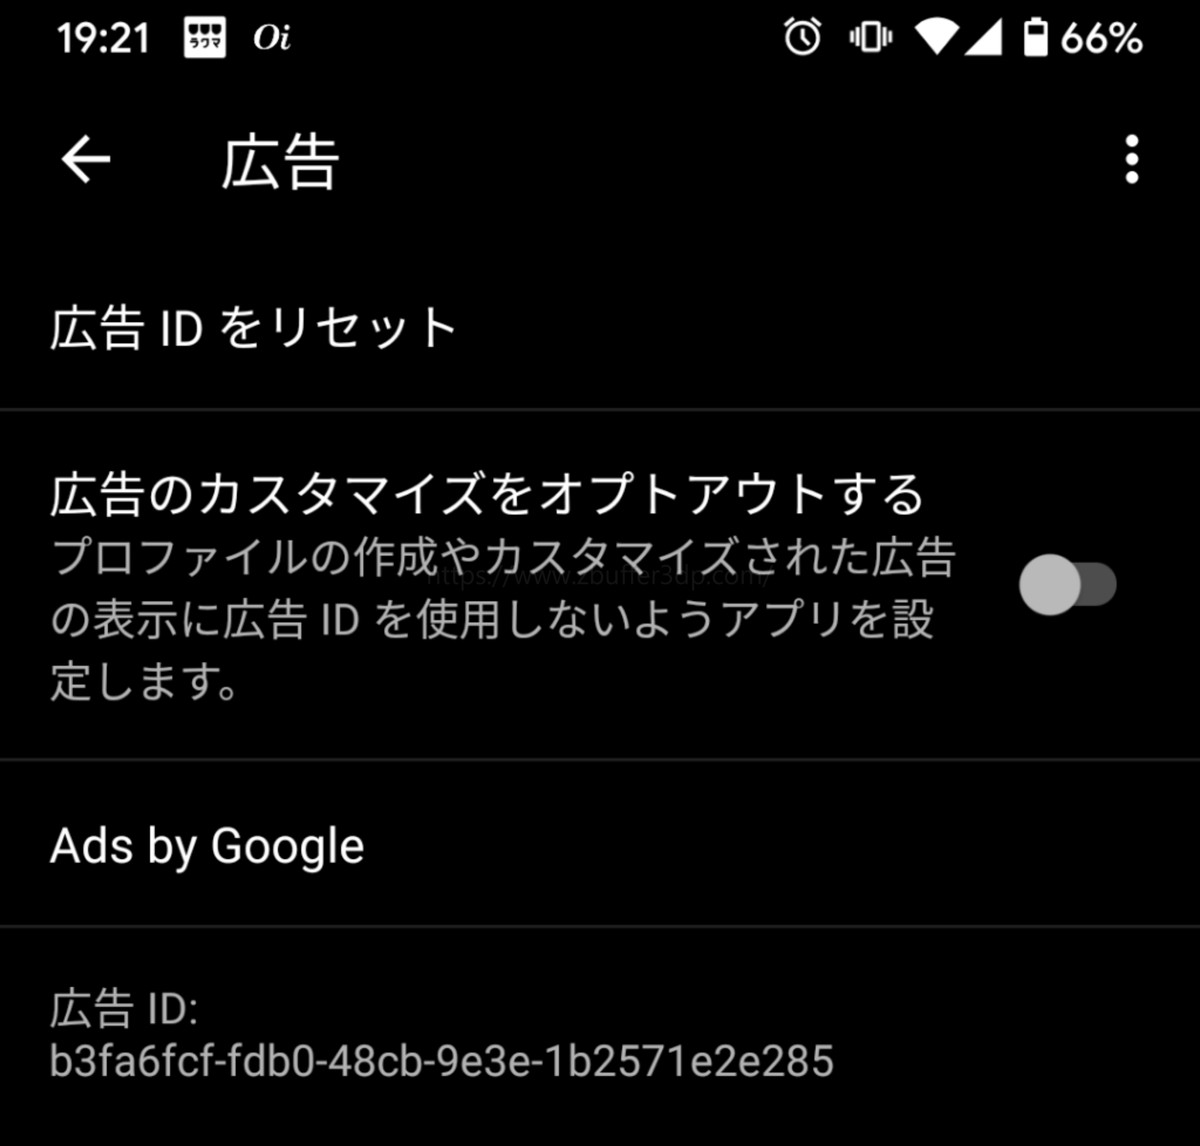 Android 10は広告のカスタマイズをオプトアウトできる